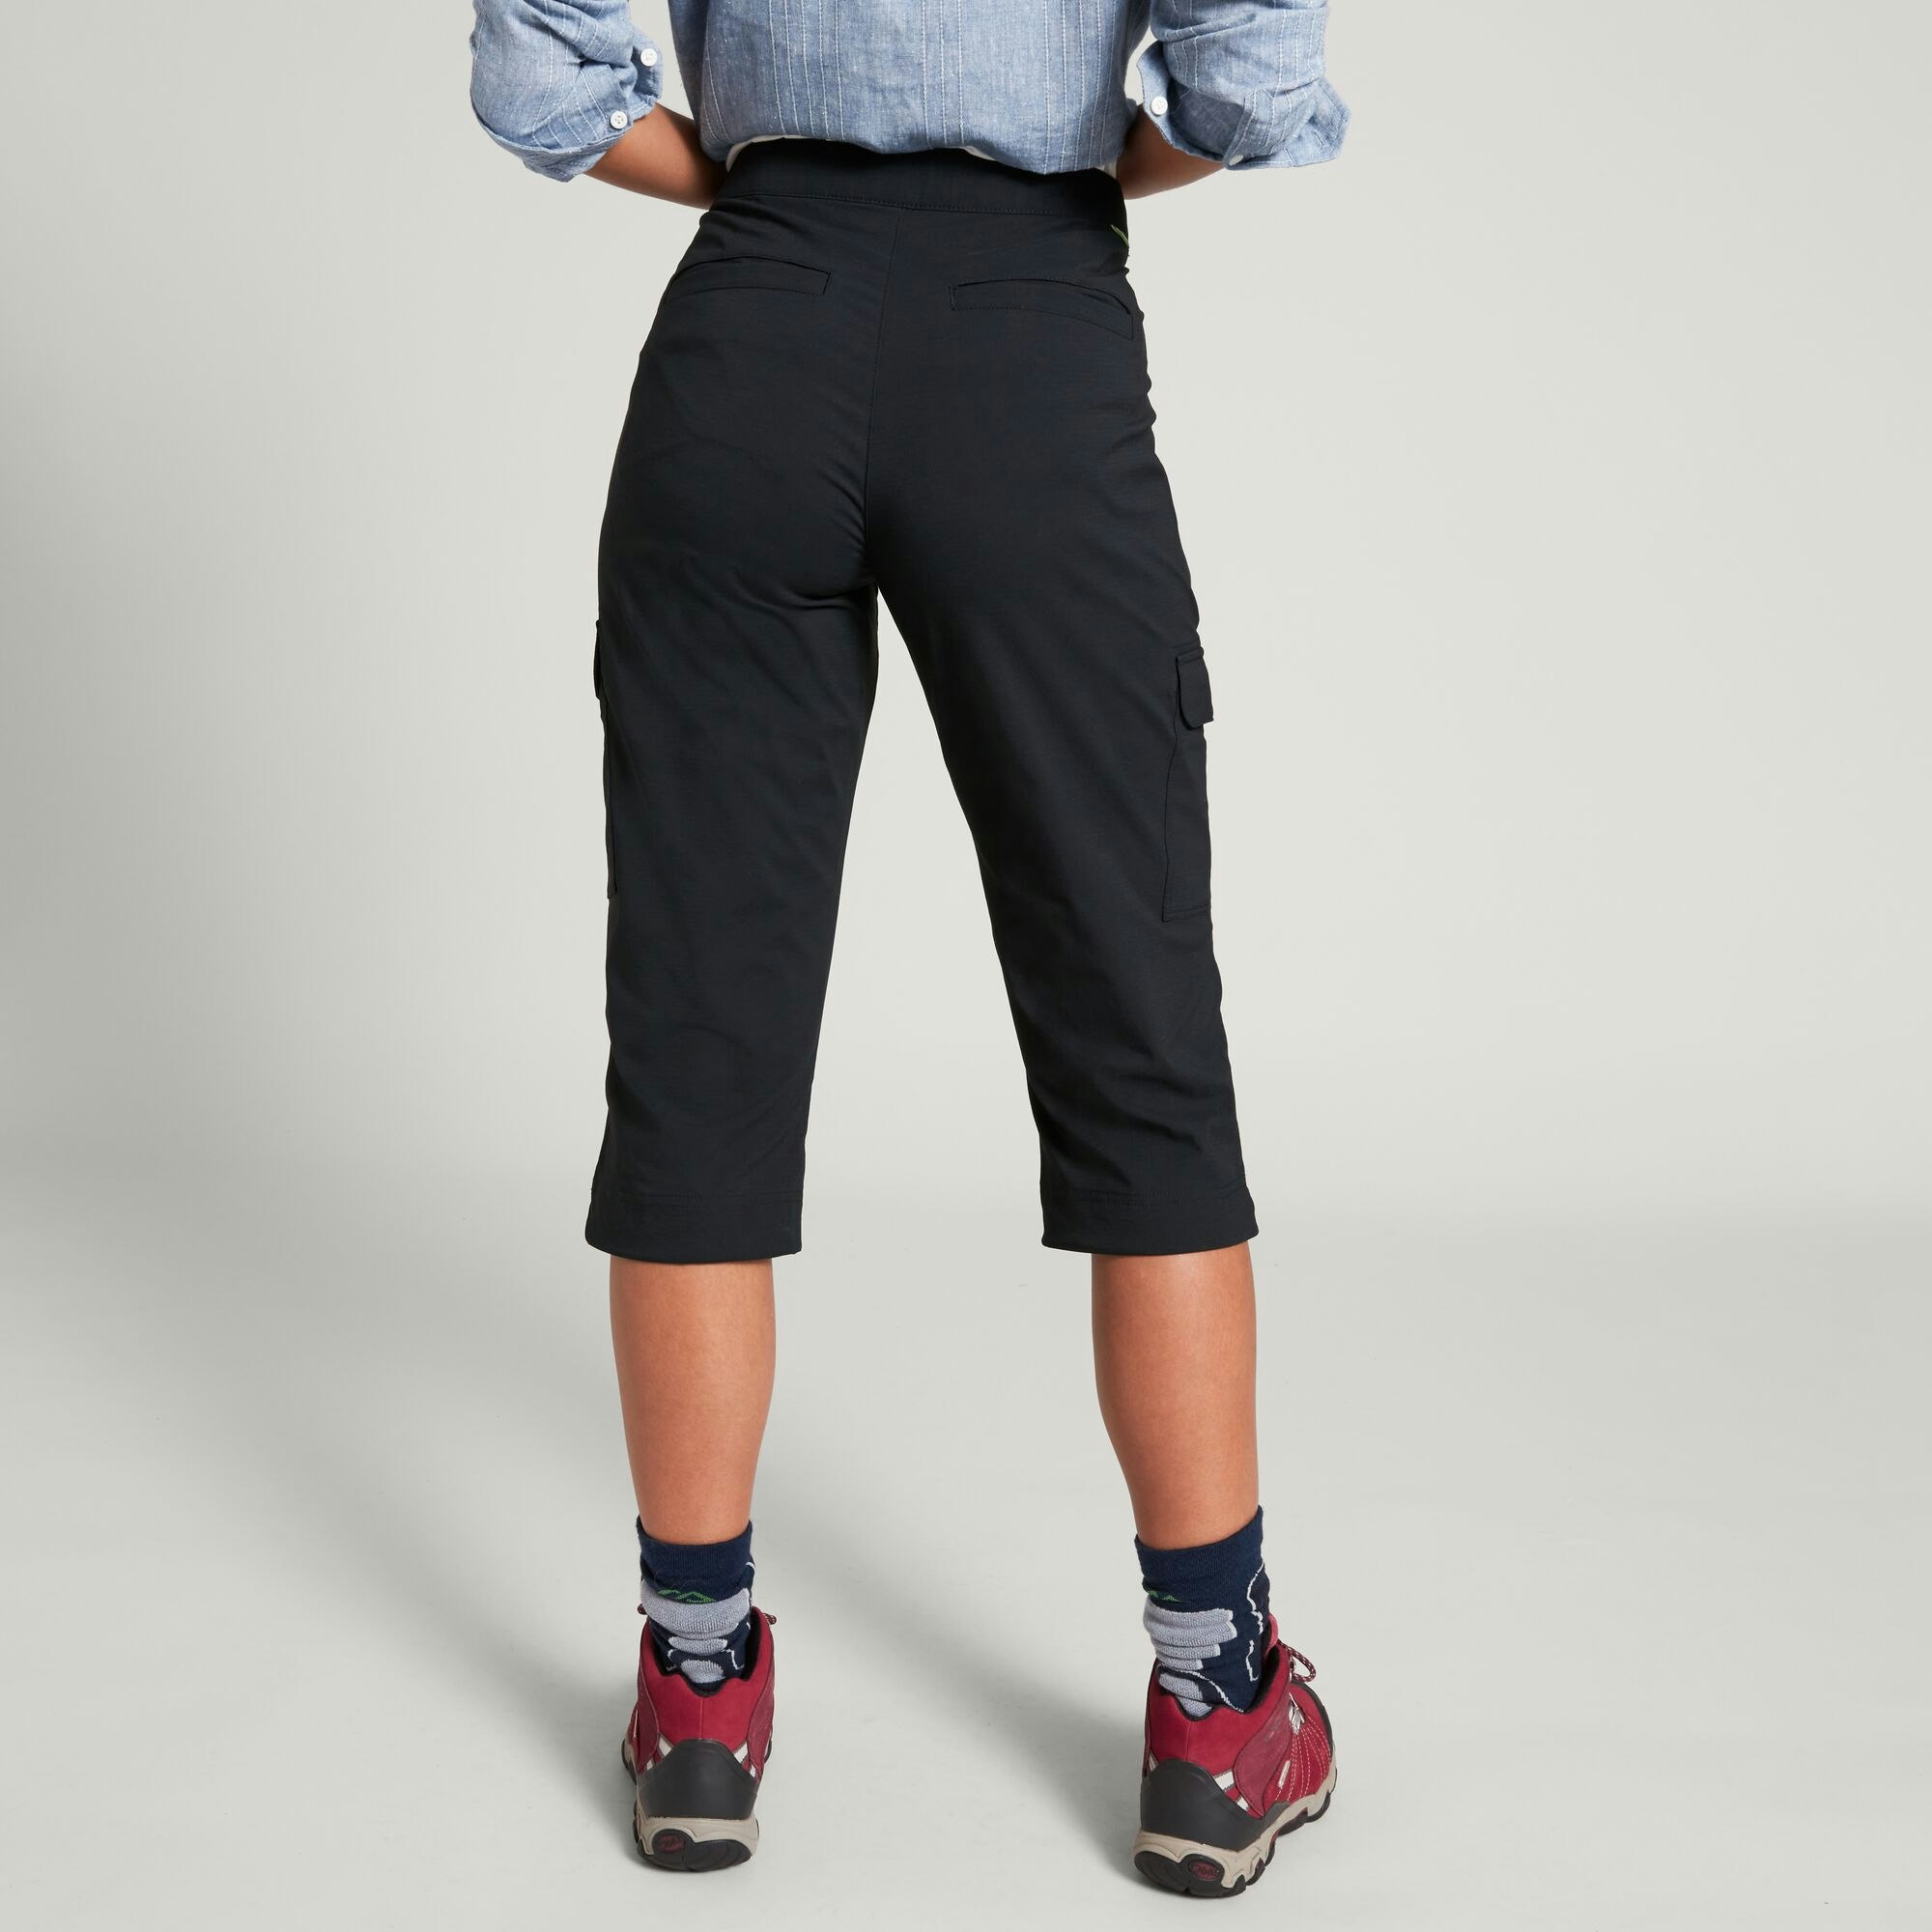 Miro Women's 3/4 Trousers